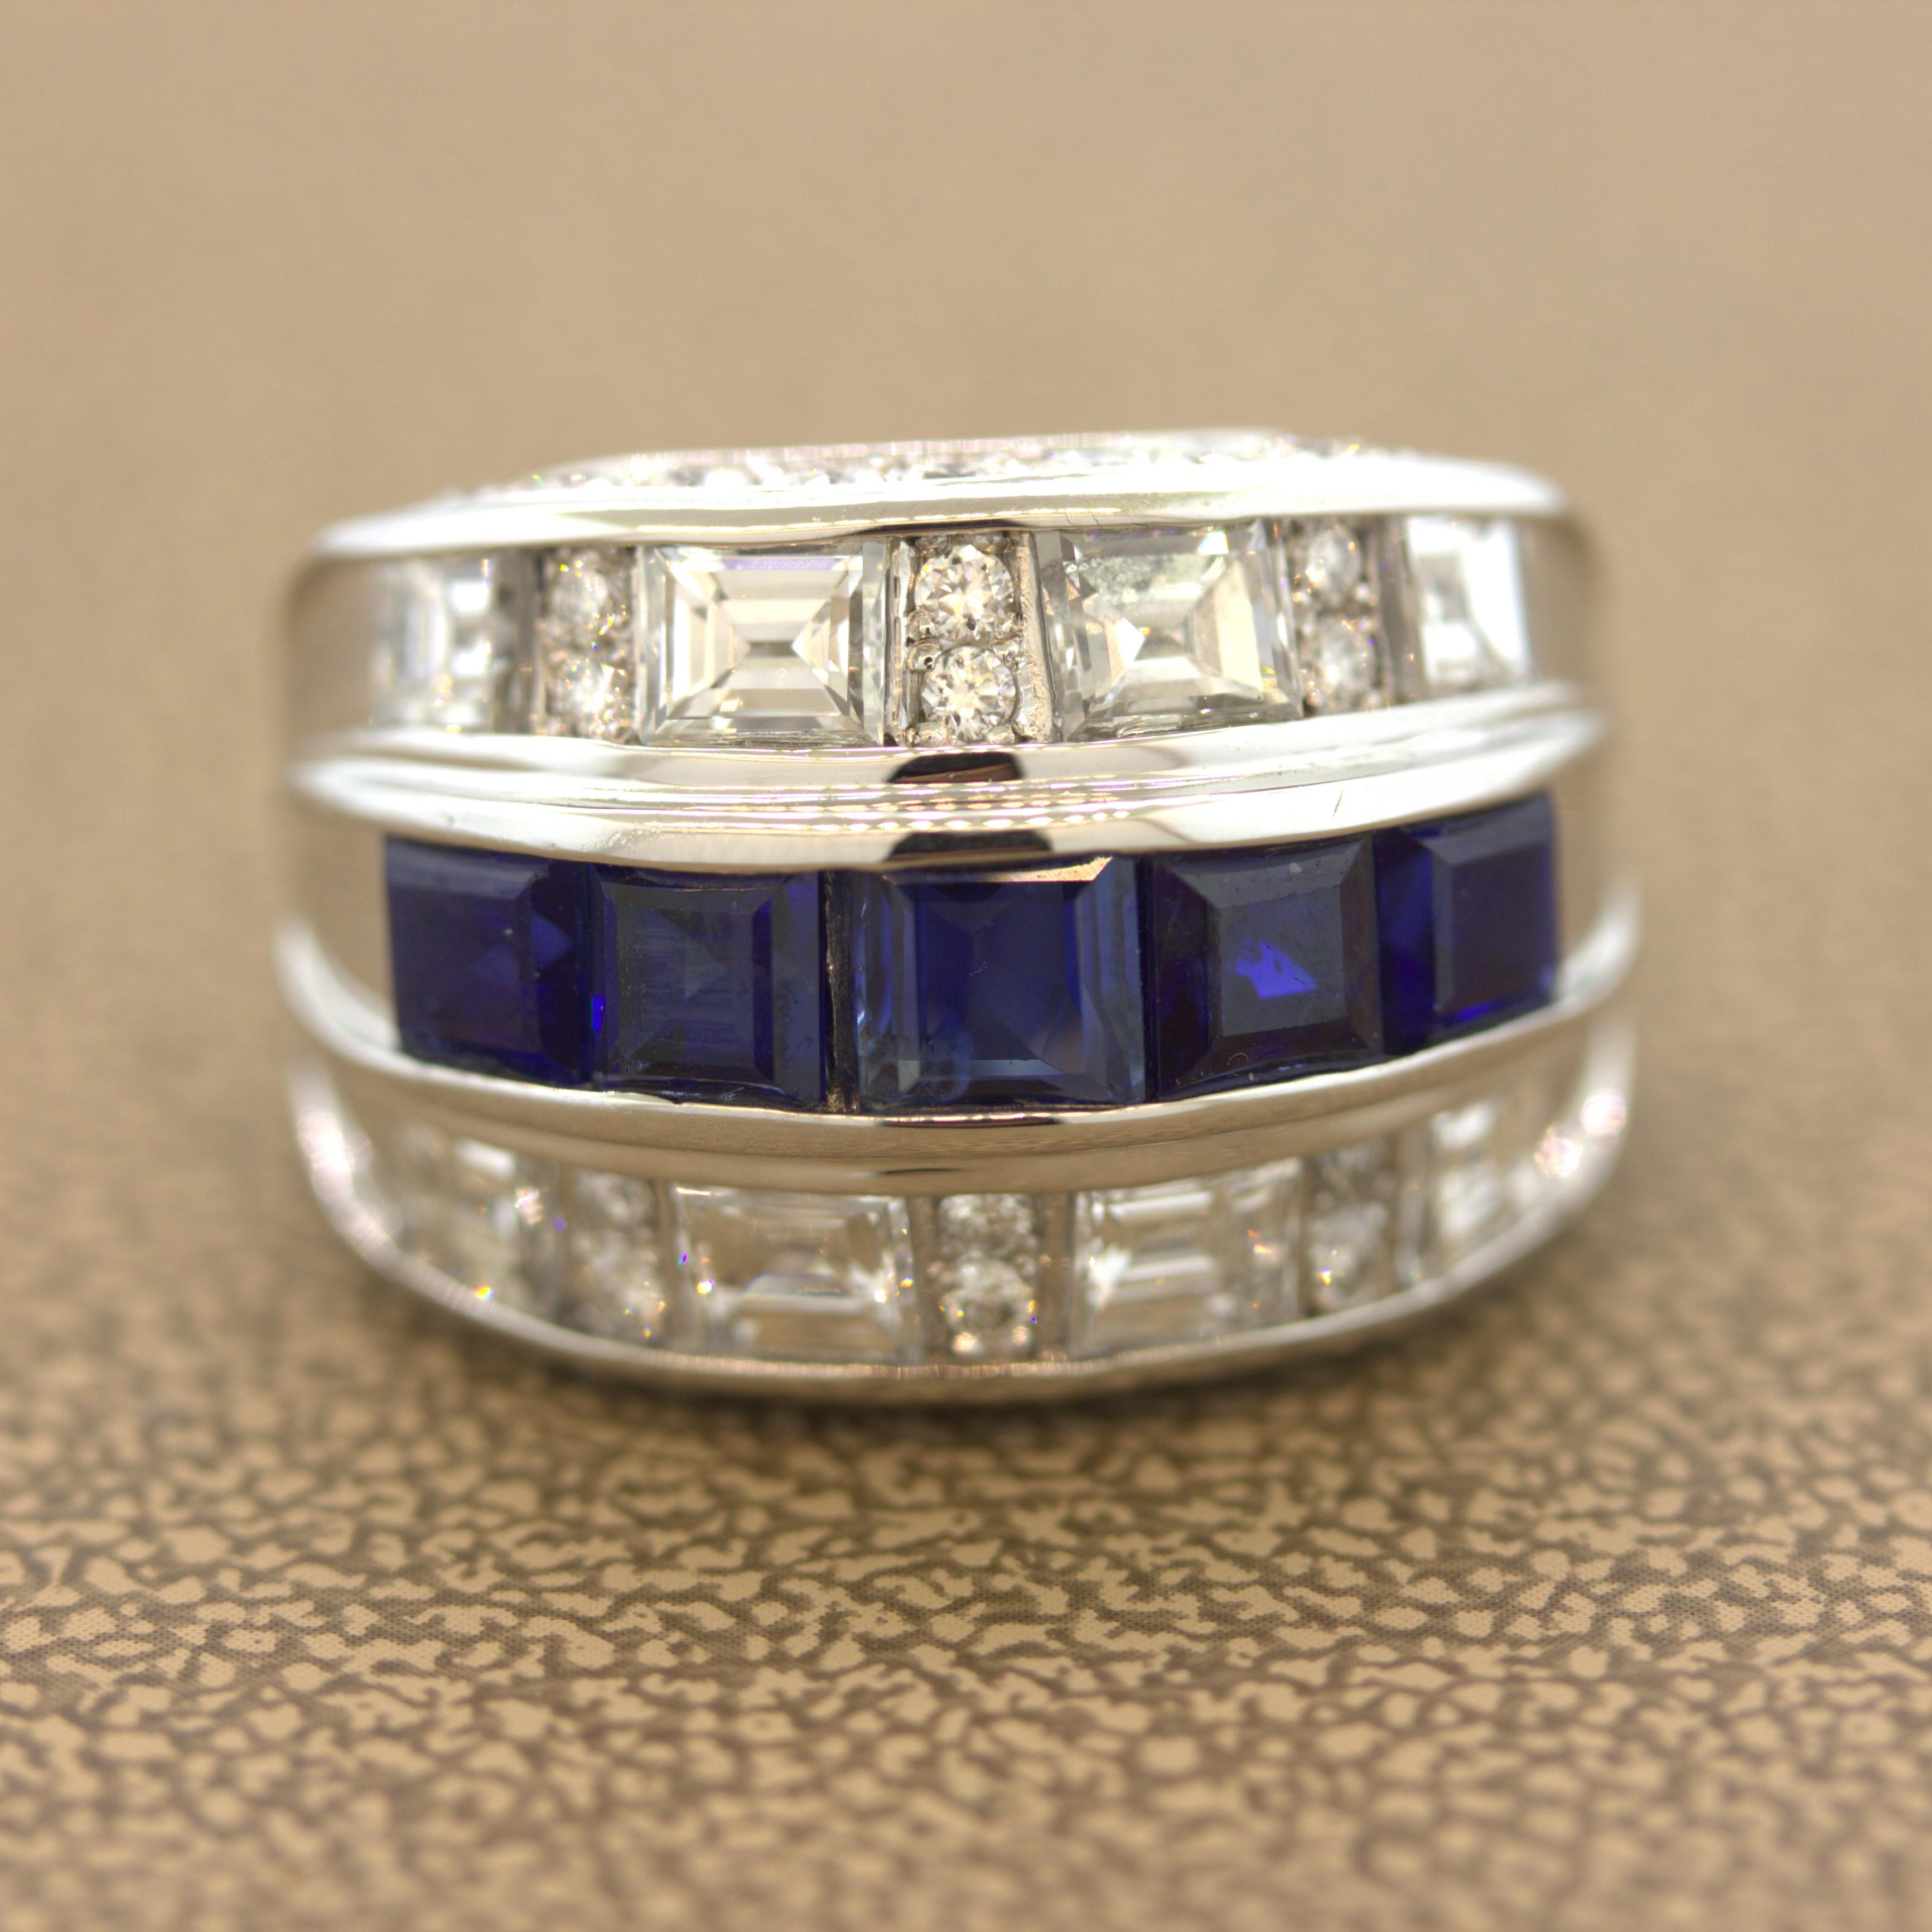 Ein sehr gut gemachtes breites Platinband mit Saphiren und Diamanten! In der Mitte des Rings sind 5 große blaue Saphire in quadratischer Form mit einem Gesamtgewicht von 2,68 Karat gefasst. Oberhalb und unterhalb der Saphirreihe sind runde Diamanten